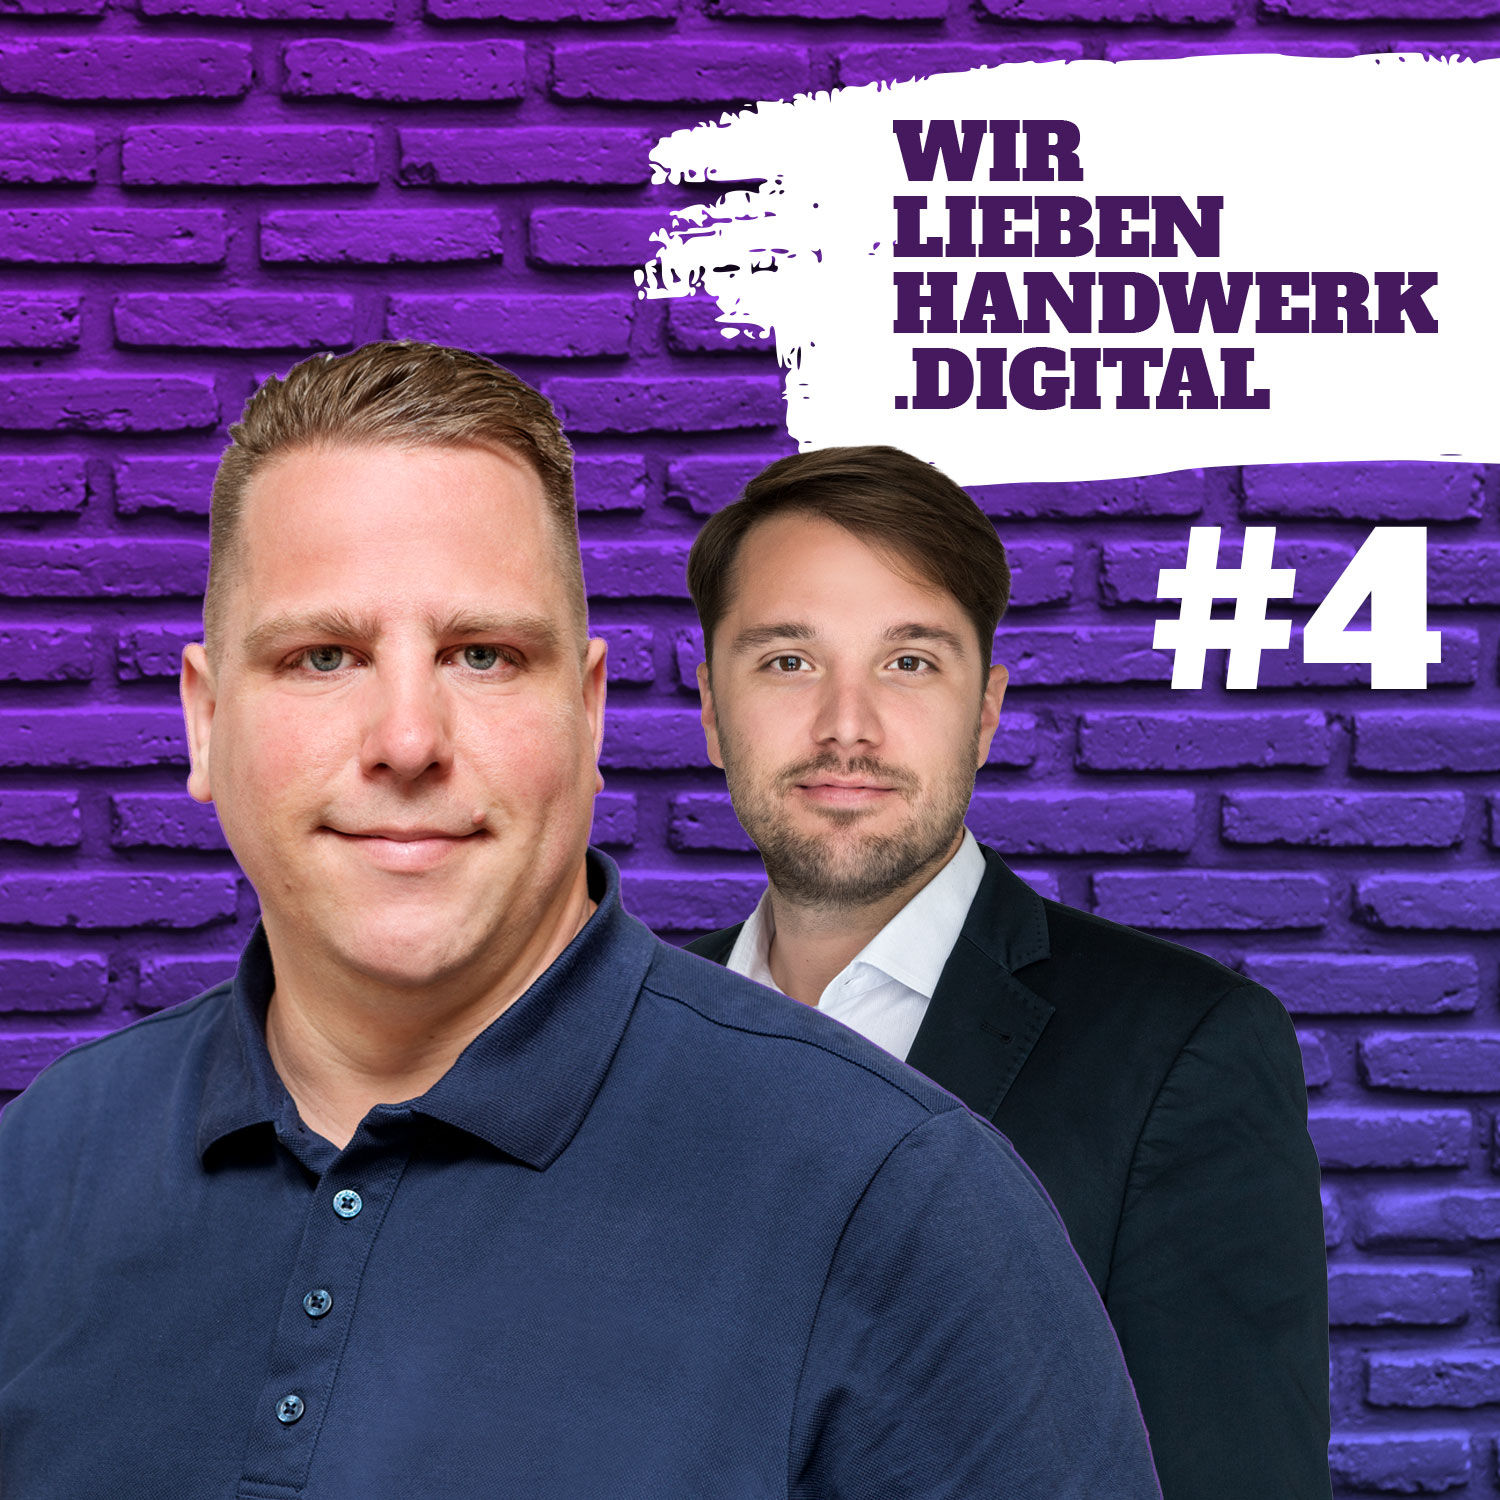 WirliebenHandwerk.digital - Podcast